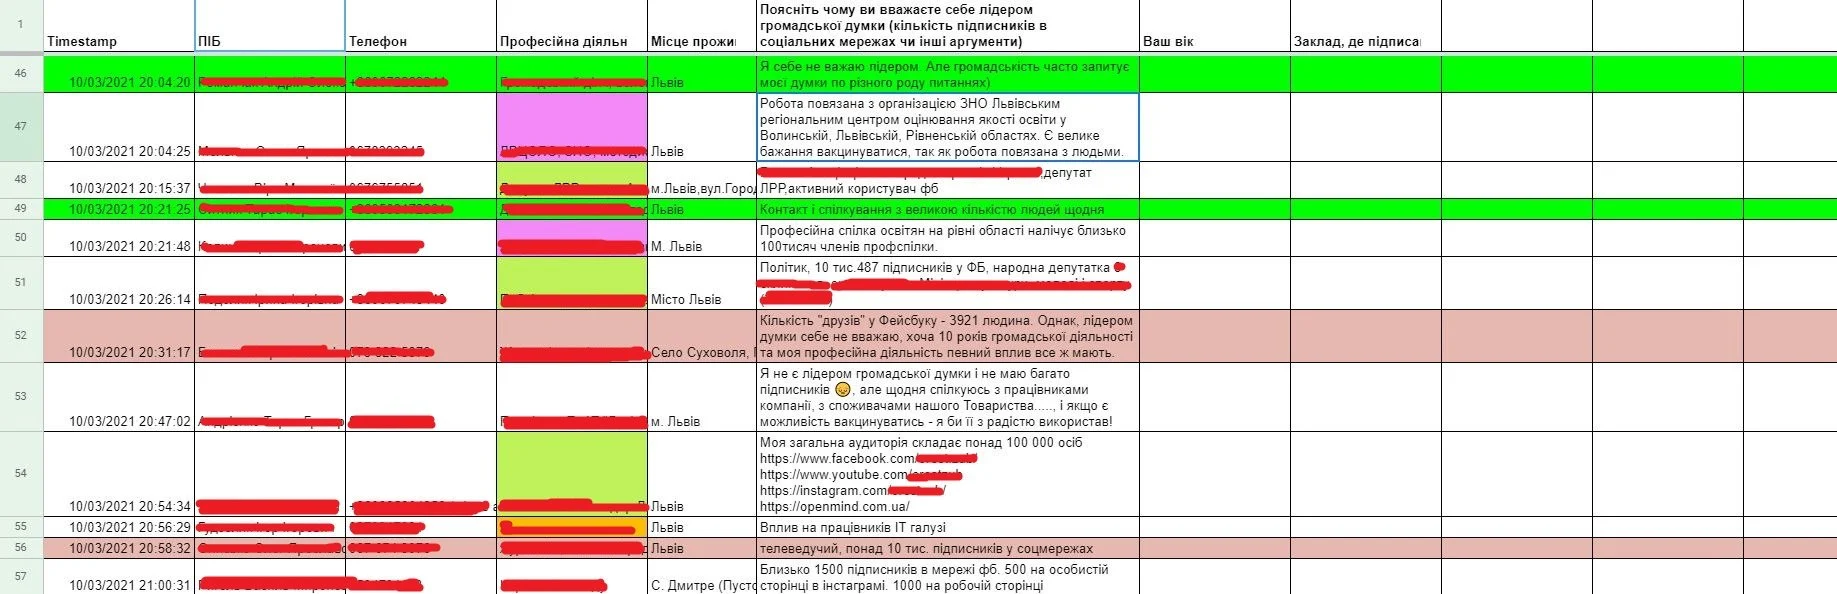 Так выглядят таблицы с персональной информацией жителей Львовщины, которые записались на внеочередную вакцинацию